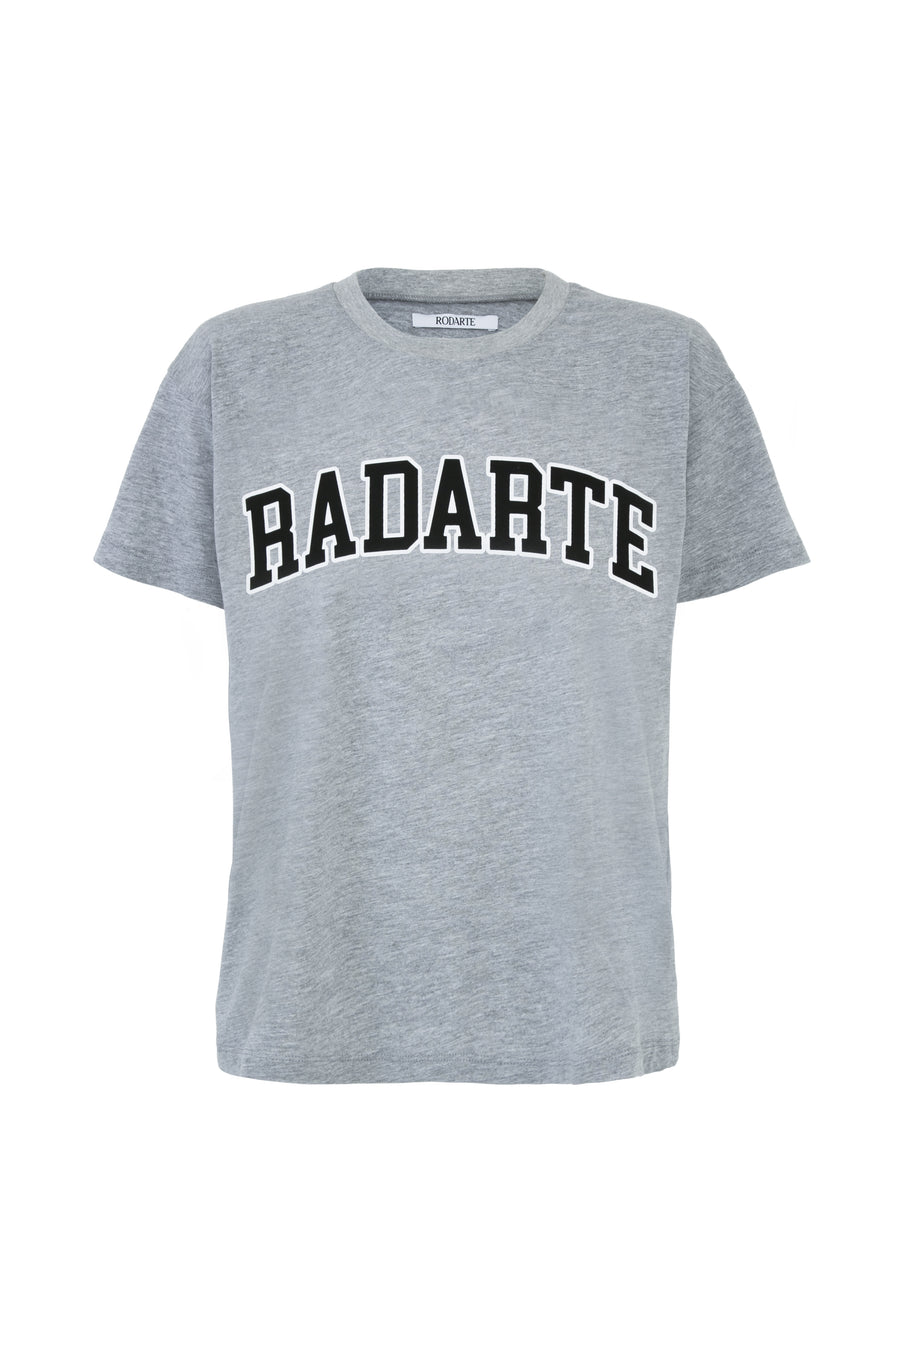 Radarte Collegiate Logo T-Shirt